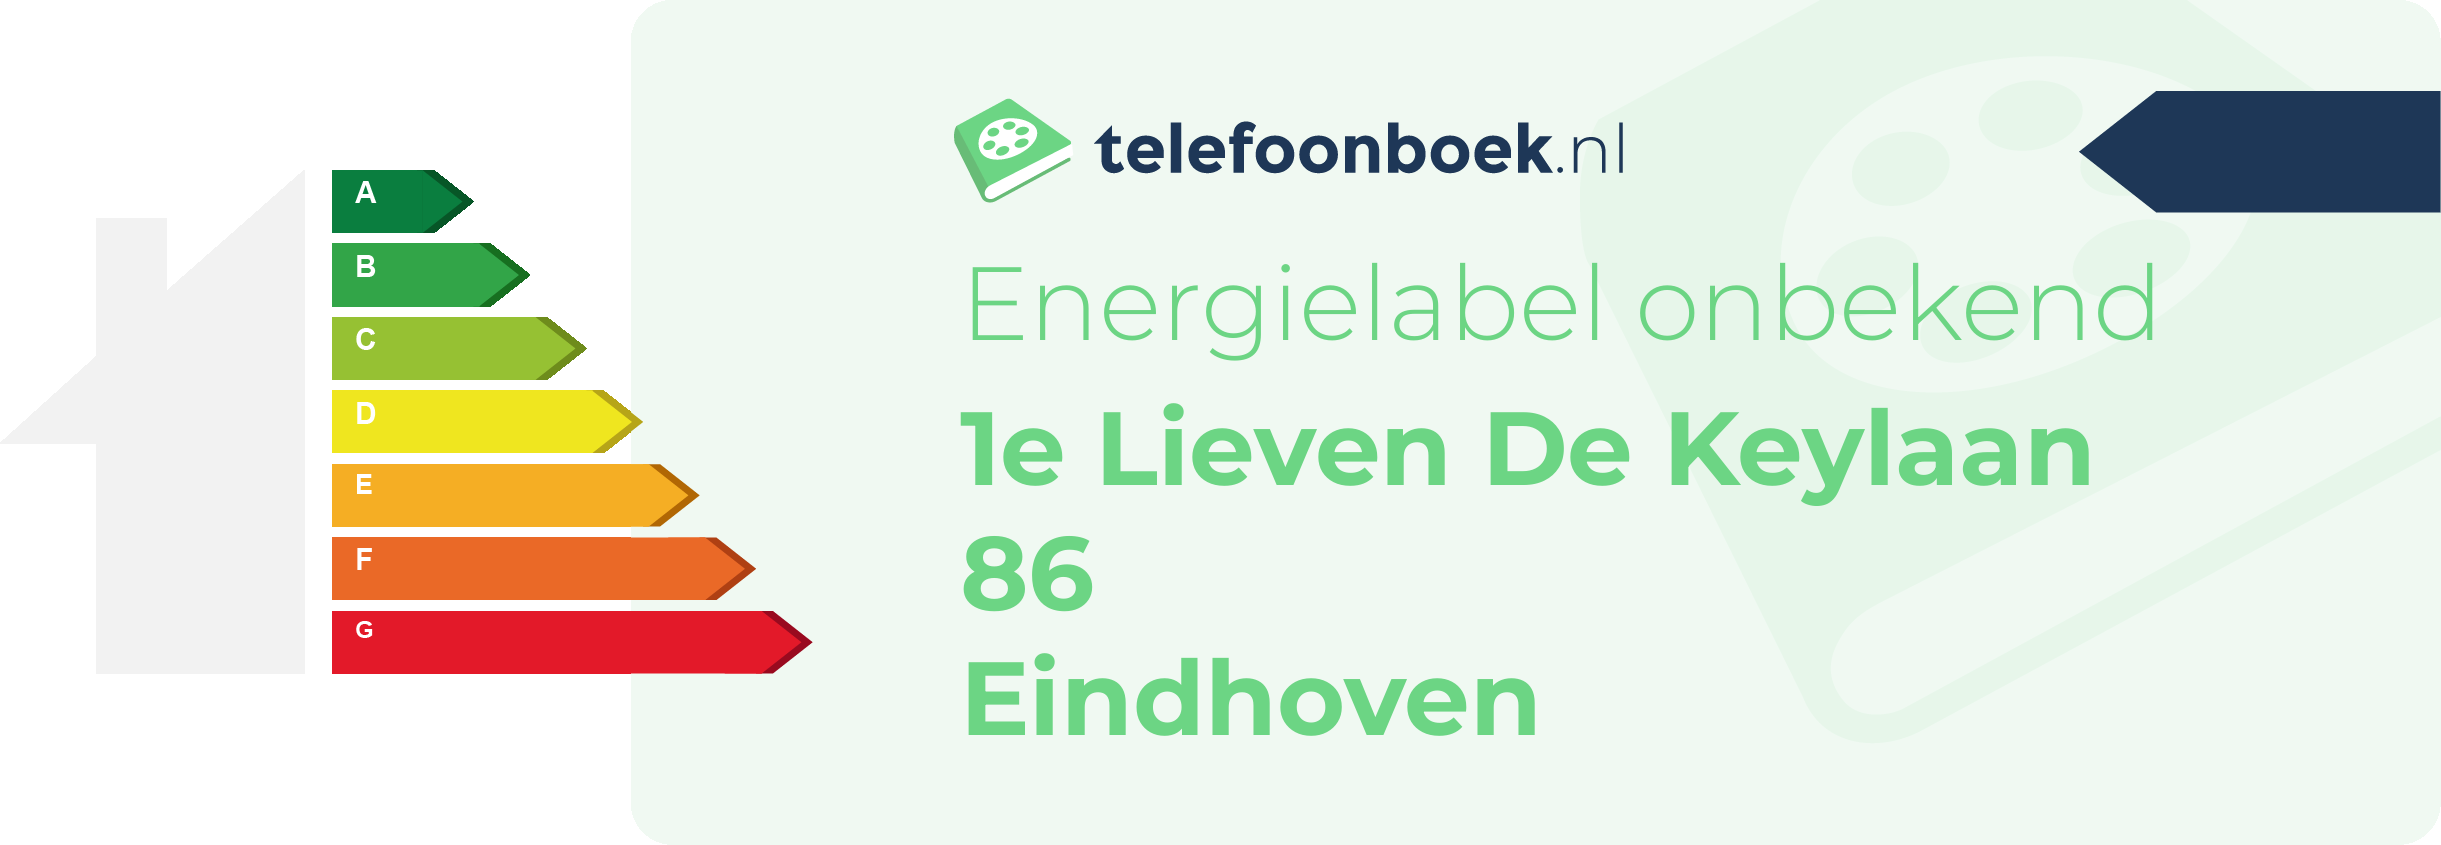 Energielabel 1e Lieven De Keylaan 86 Eindhoven